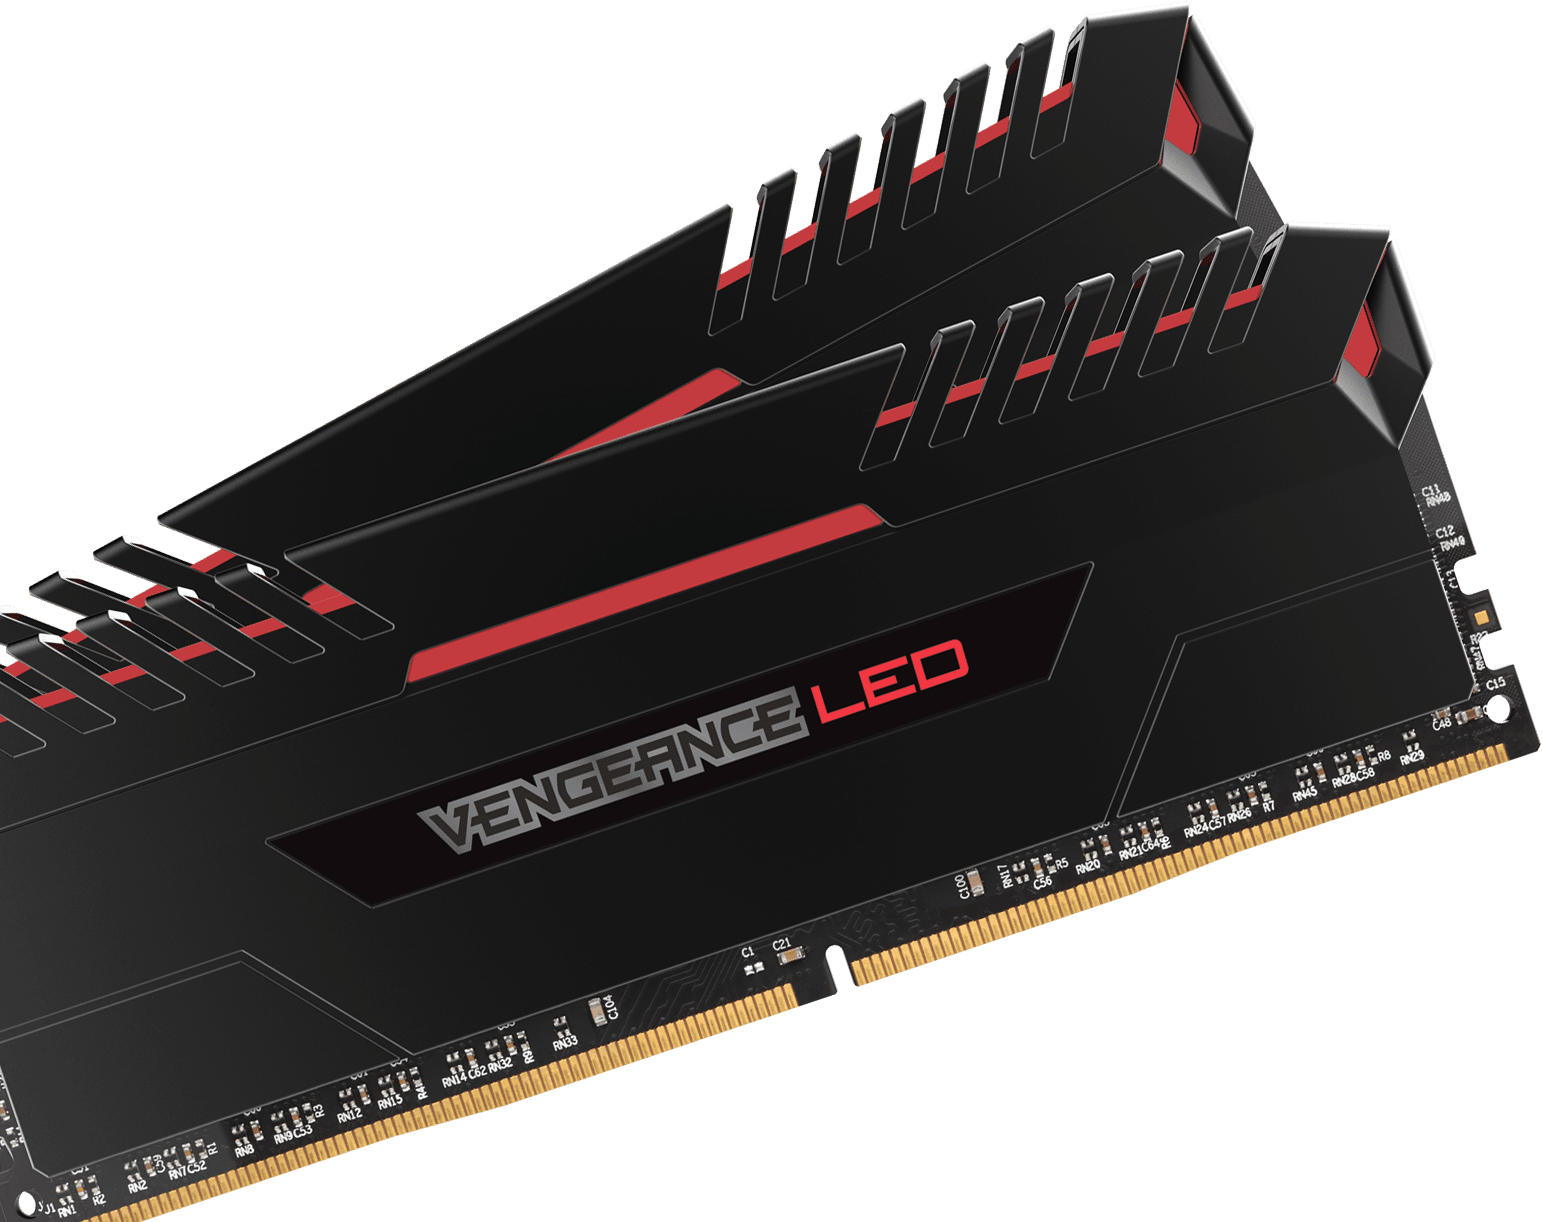 レビュー投稿で選べる特典 Corsair Vengeance LED 64 GB (4 x 16 GB) DDR4 3000 MHz C15 2.0 Enthusiast LED Illuminated Memory Kit - Black with Red LED Lighting 並行輸入品 - 通販 -